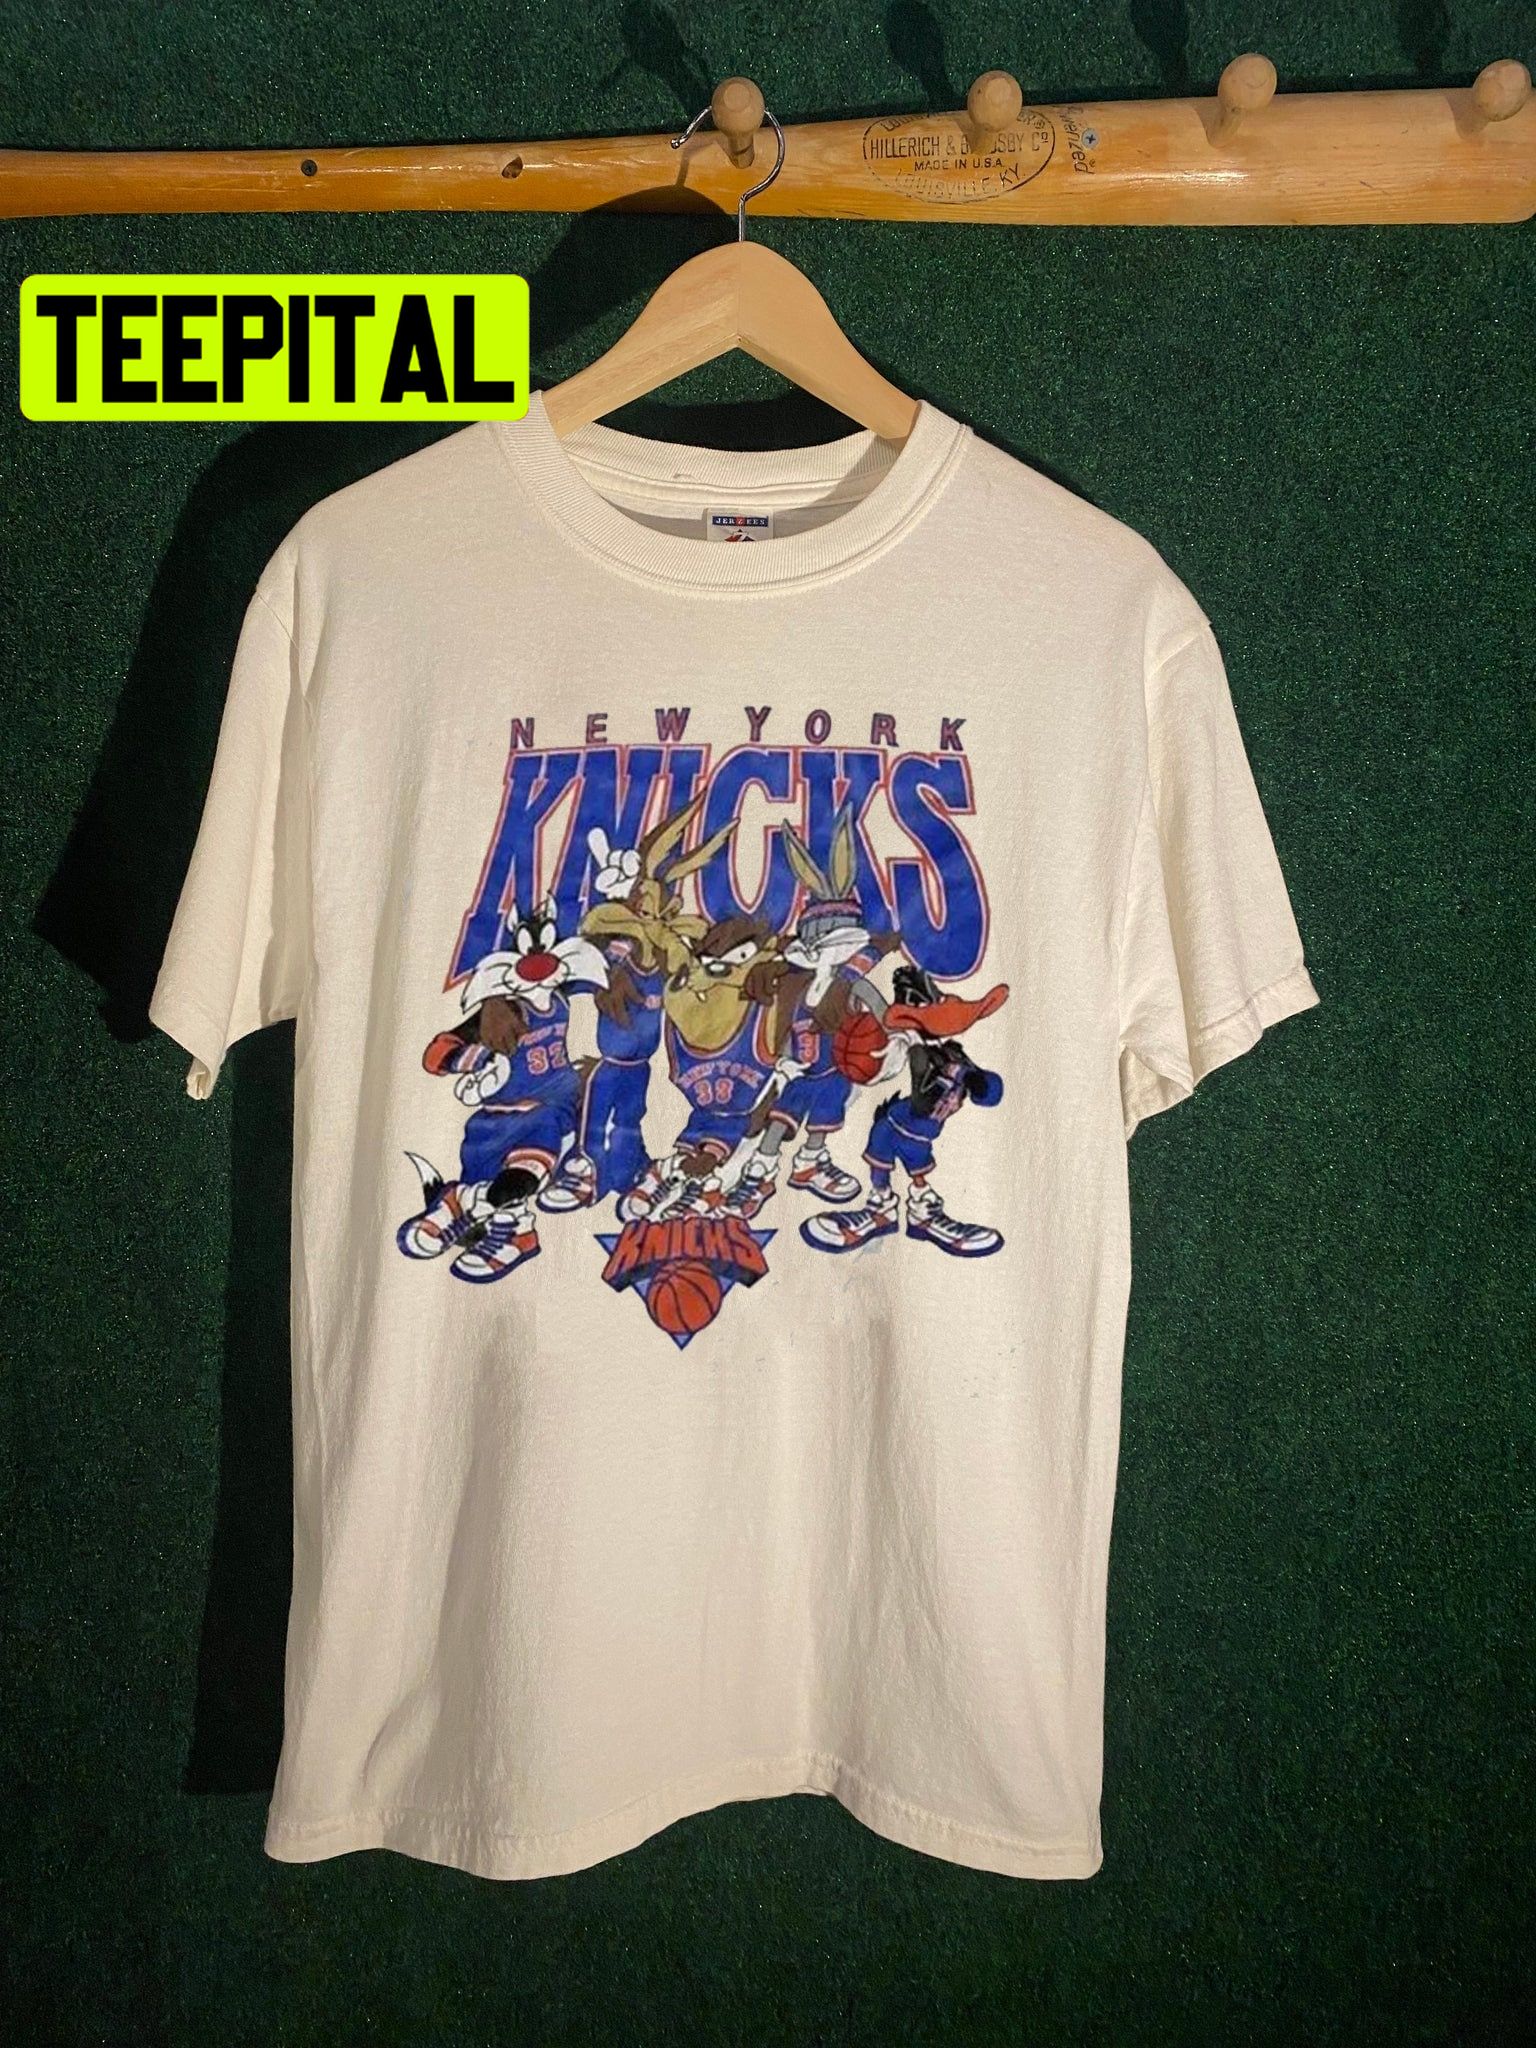 NY Knicks T Shirt 1970 Champs, Knicks T Shirt, NY Knicks T Shirt, Knicks T  Shirt, Knicks Tshirt, Knicks Champions, Knicks Vintage Tshirt 